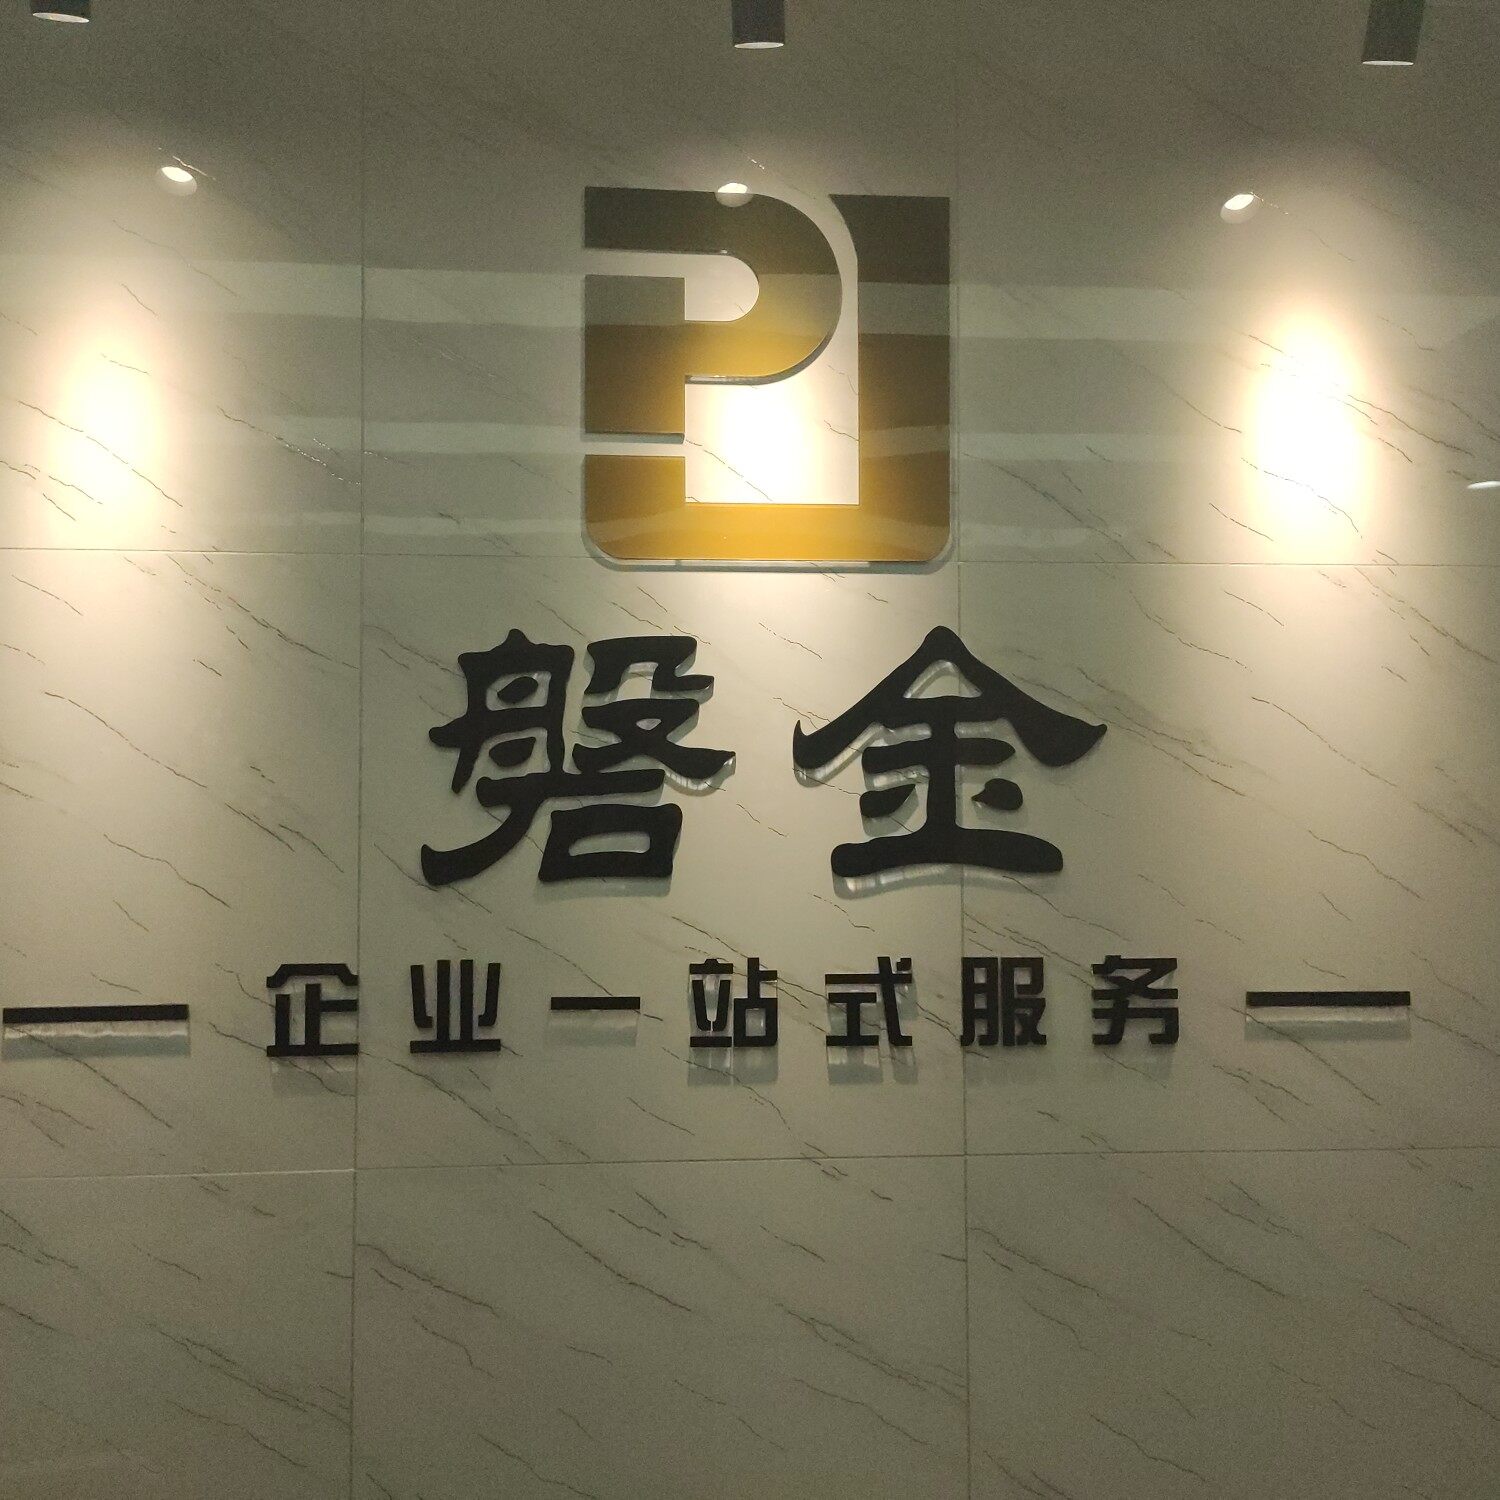 重庆磐金汽车信息咨询有限公司logo